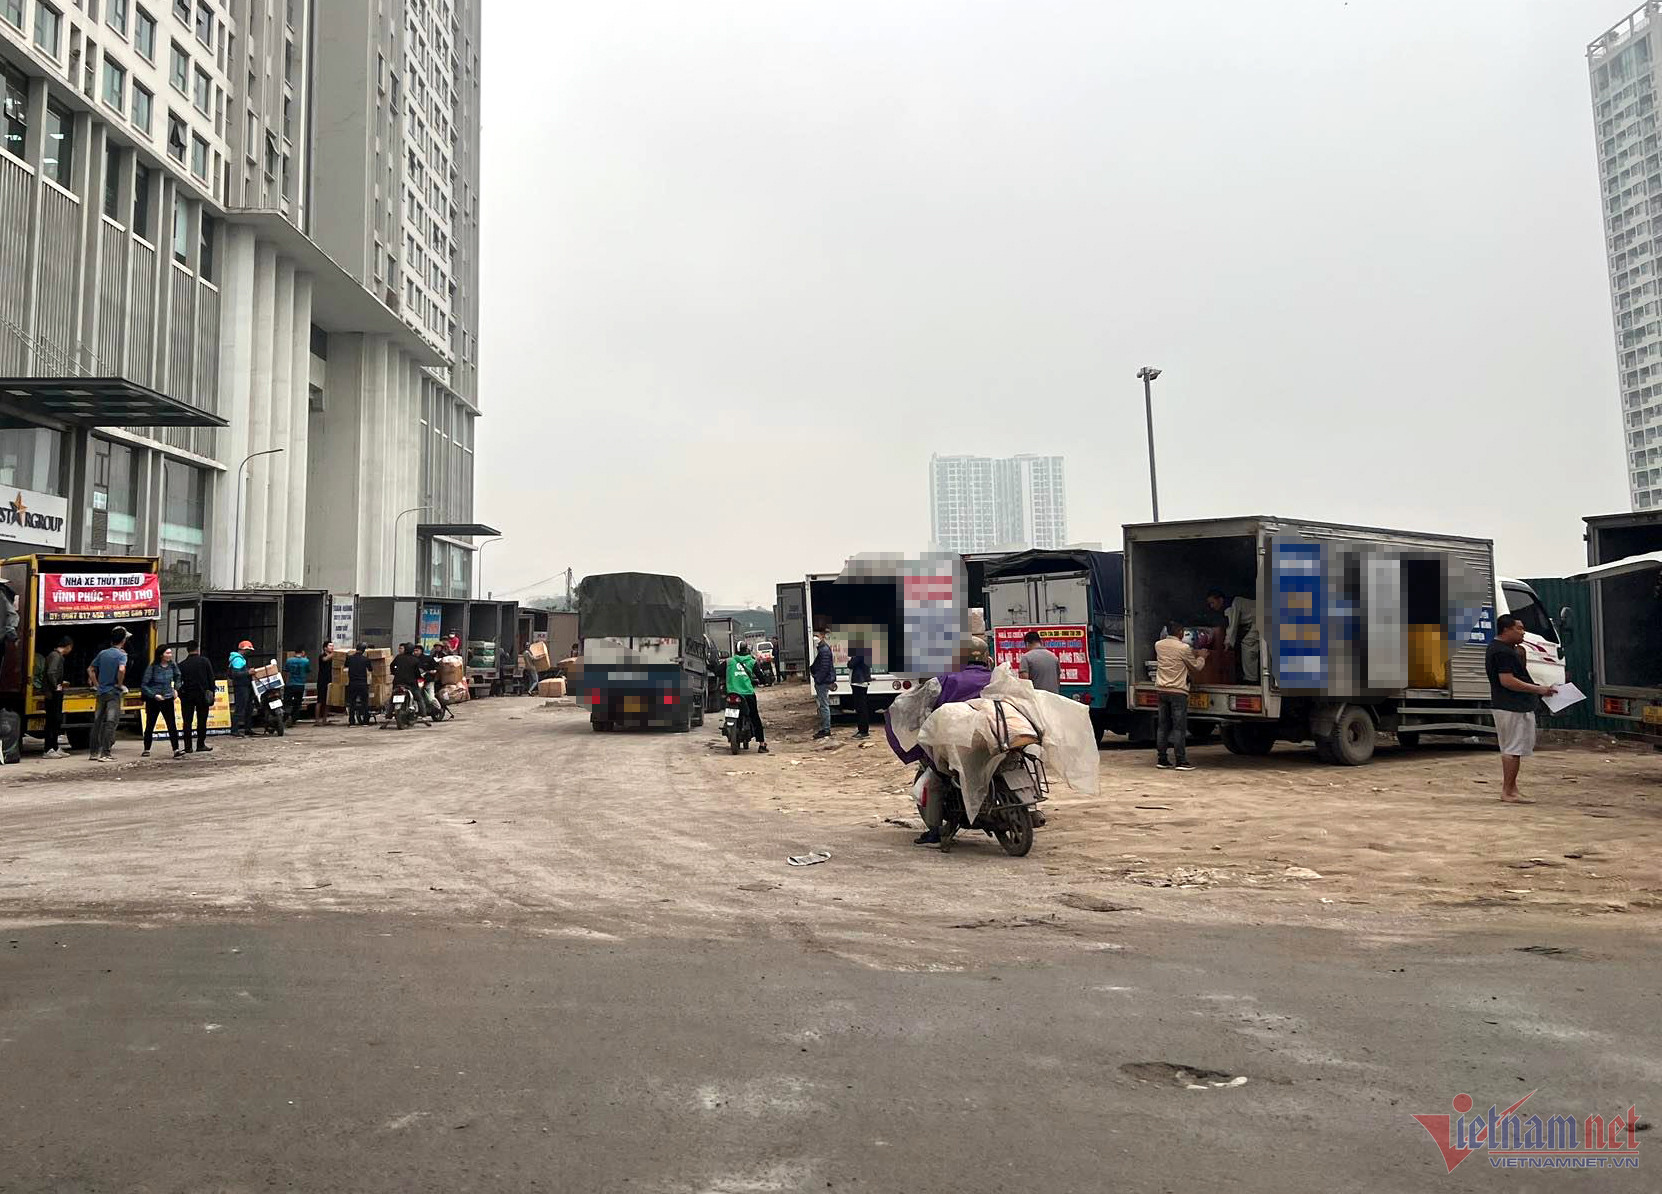 Bản tin trưa ngày 16/4: Xác minh 'dân anh chị' bảo kê bãi xe không phép ở Hà Nội